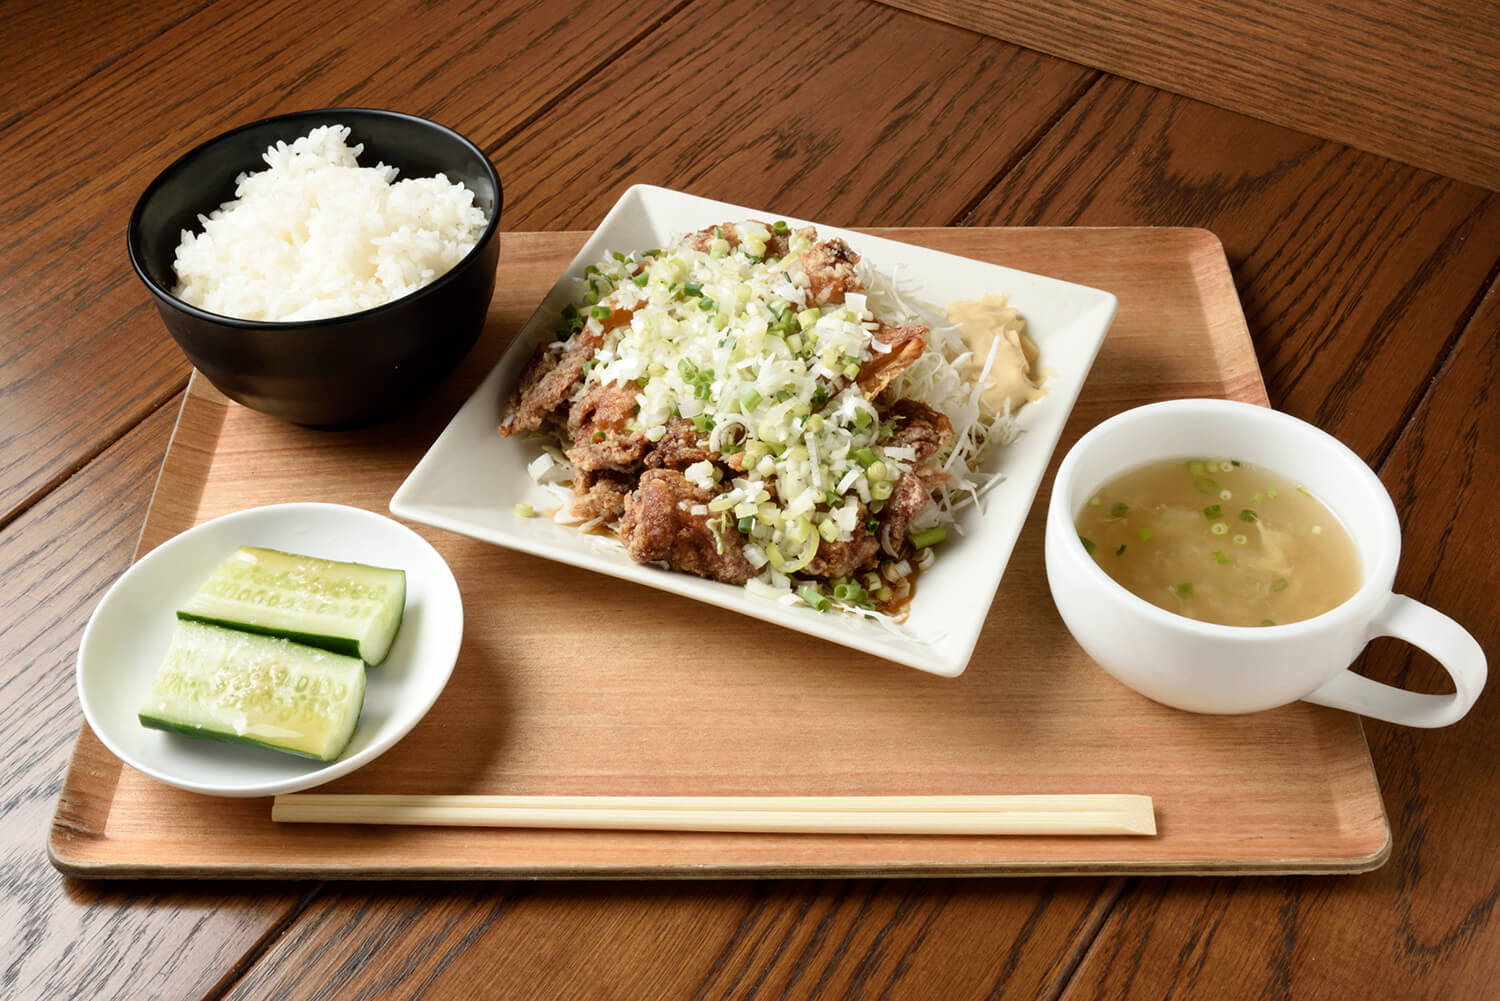 おかわり自由のご飯とスープ、太田きゅうりがつく「油淋鶏」880円